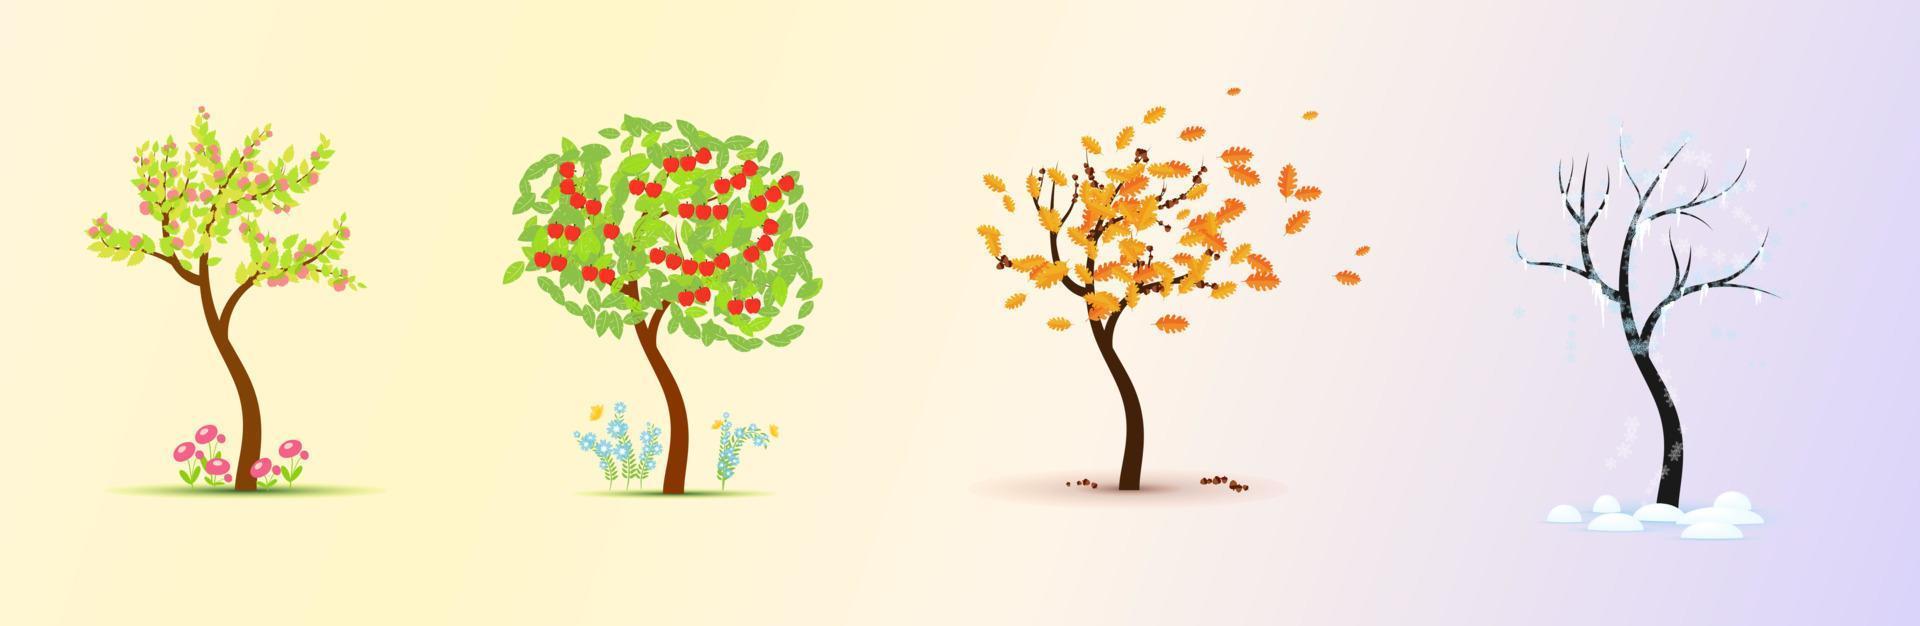 Jahreszeiten. Baum in vier Stufen - Frühling, Sommer, Herbst, Winter-Vektor-Illustration vektor